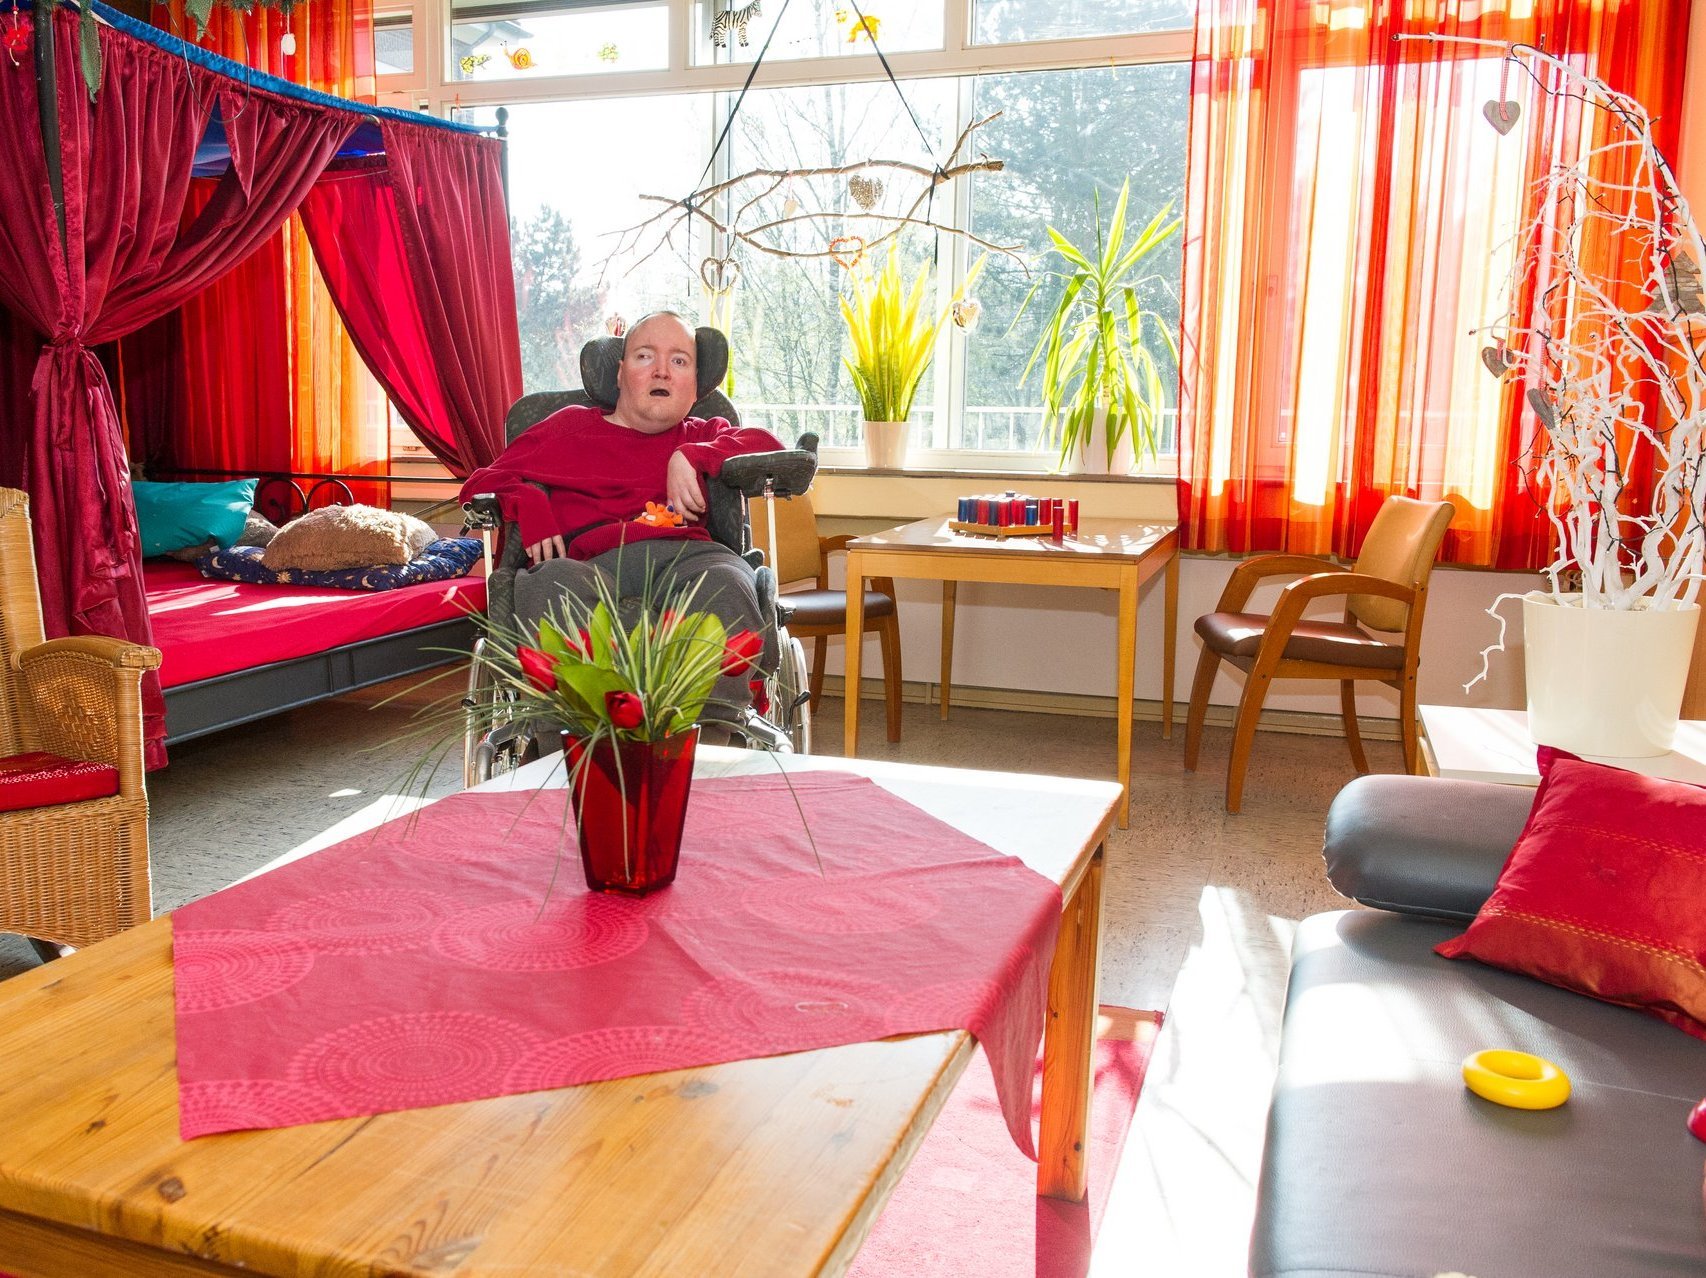 Ein Mann im Rollstuhl in einem gemütliches Zimmer mit Bett, Sessel, Regal und orangen Vorhängen